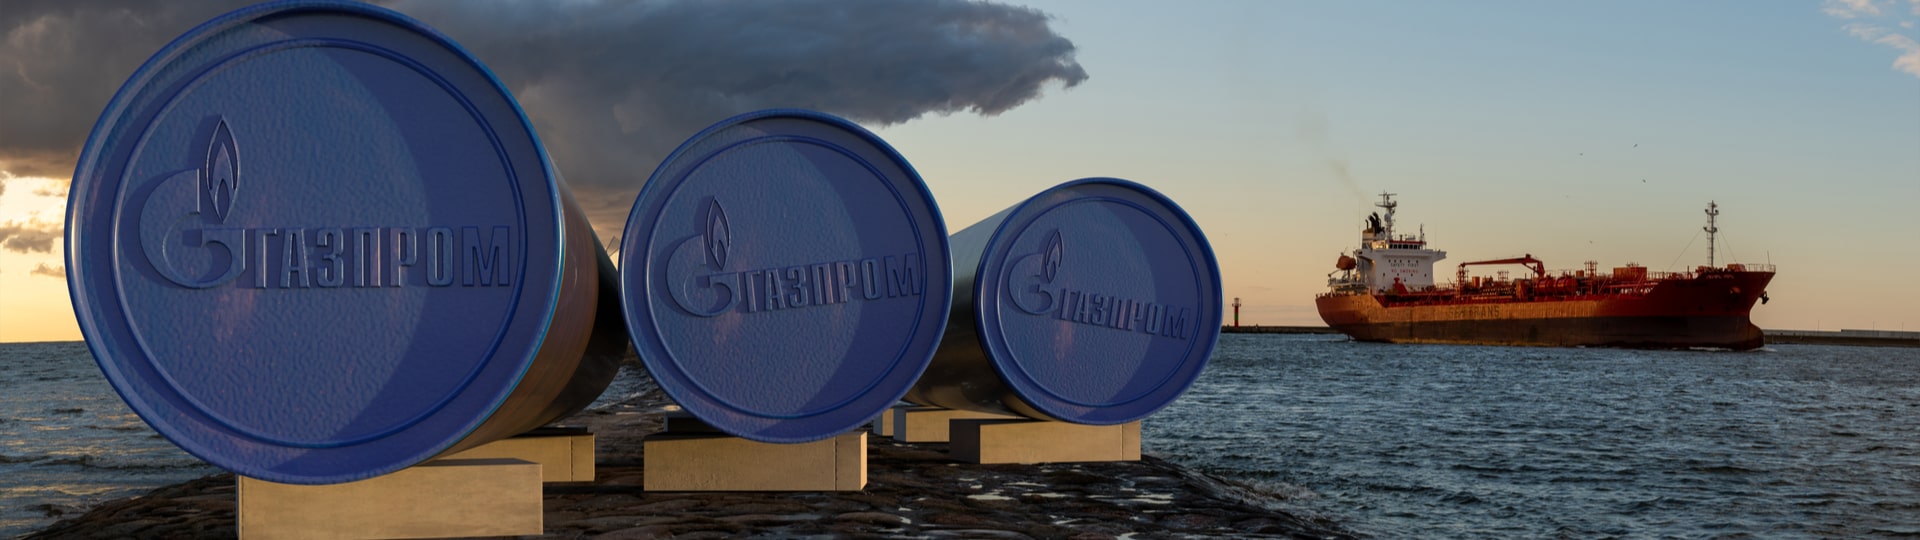 Vývoz Gazpromu do Evropy zřejmě výrazně klesne